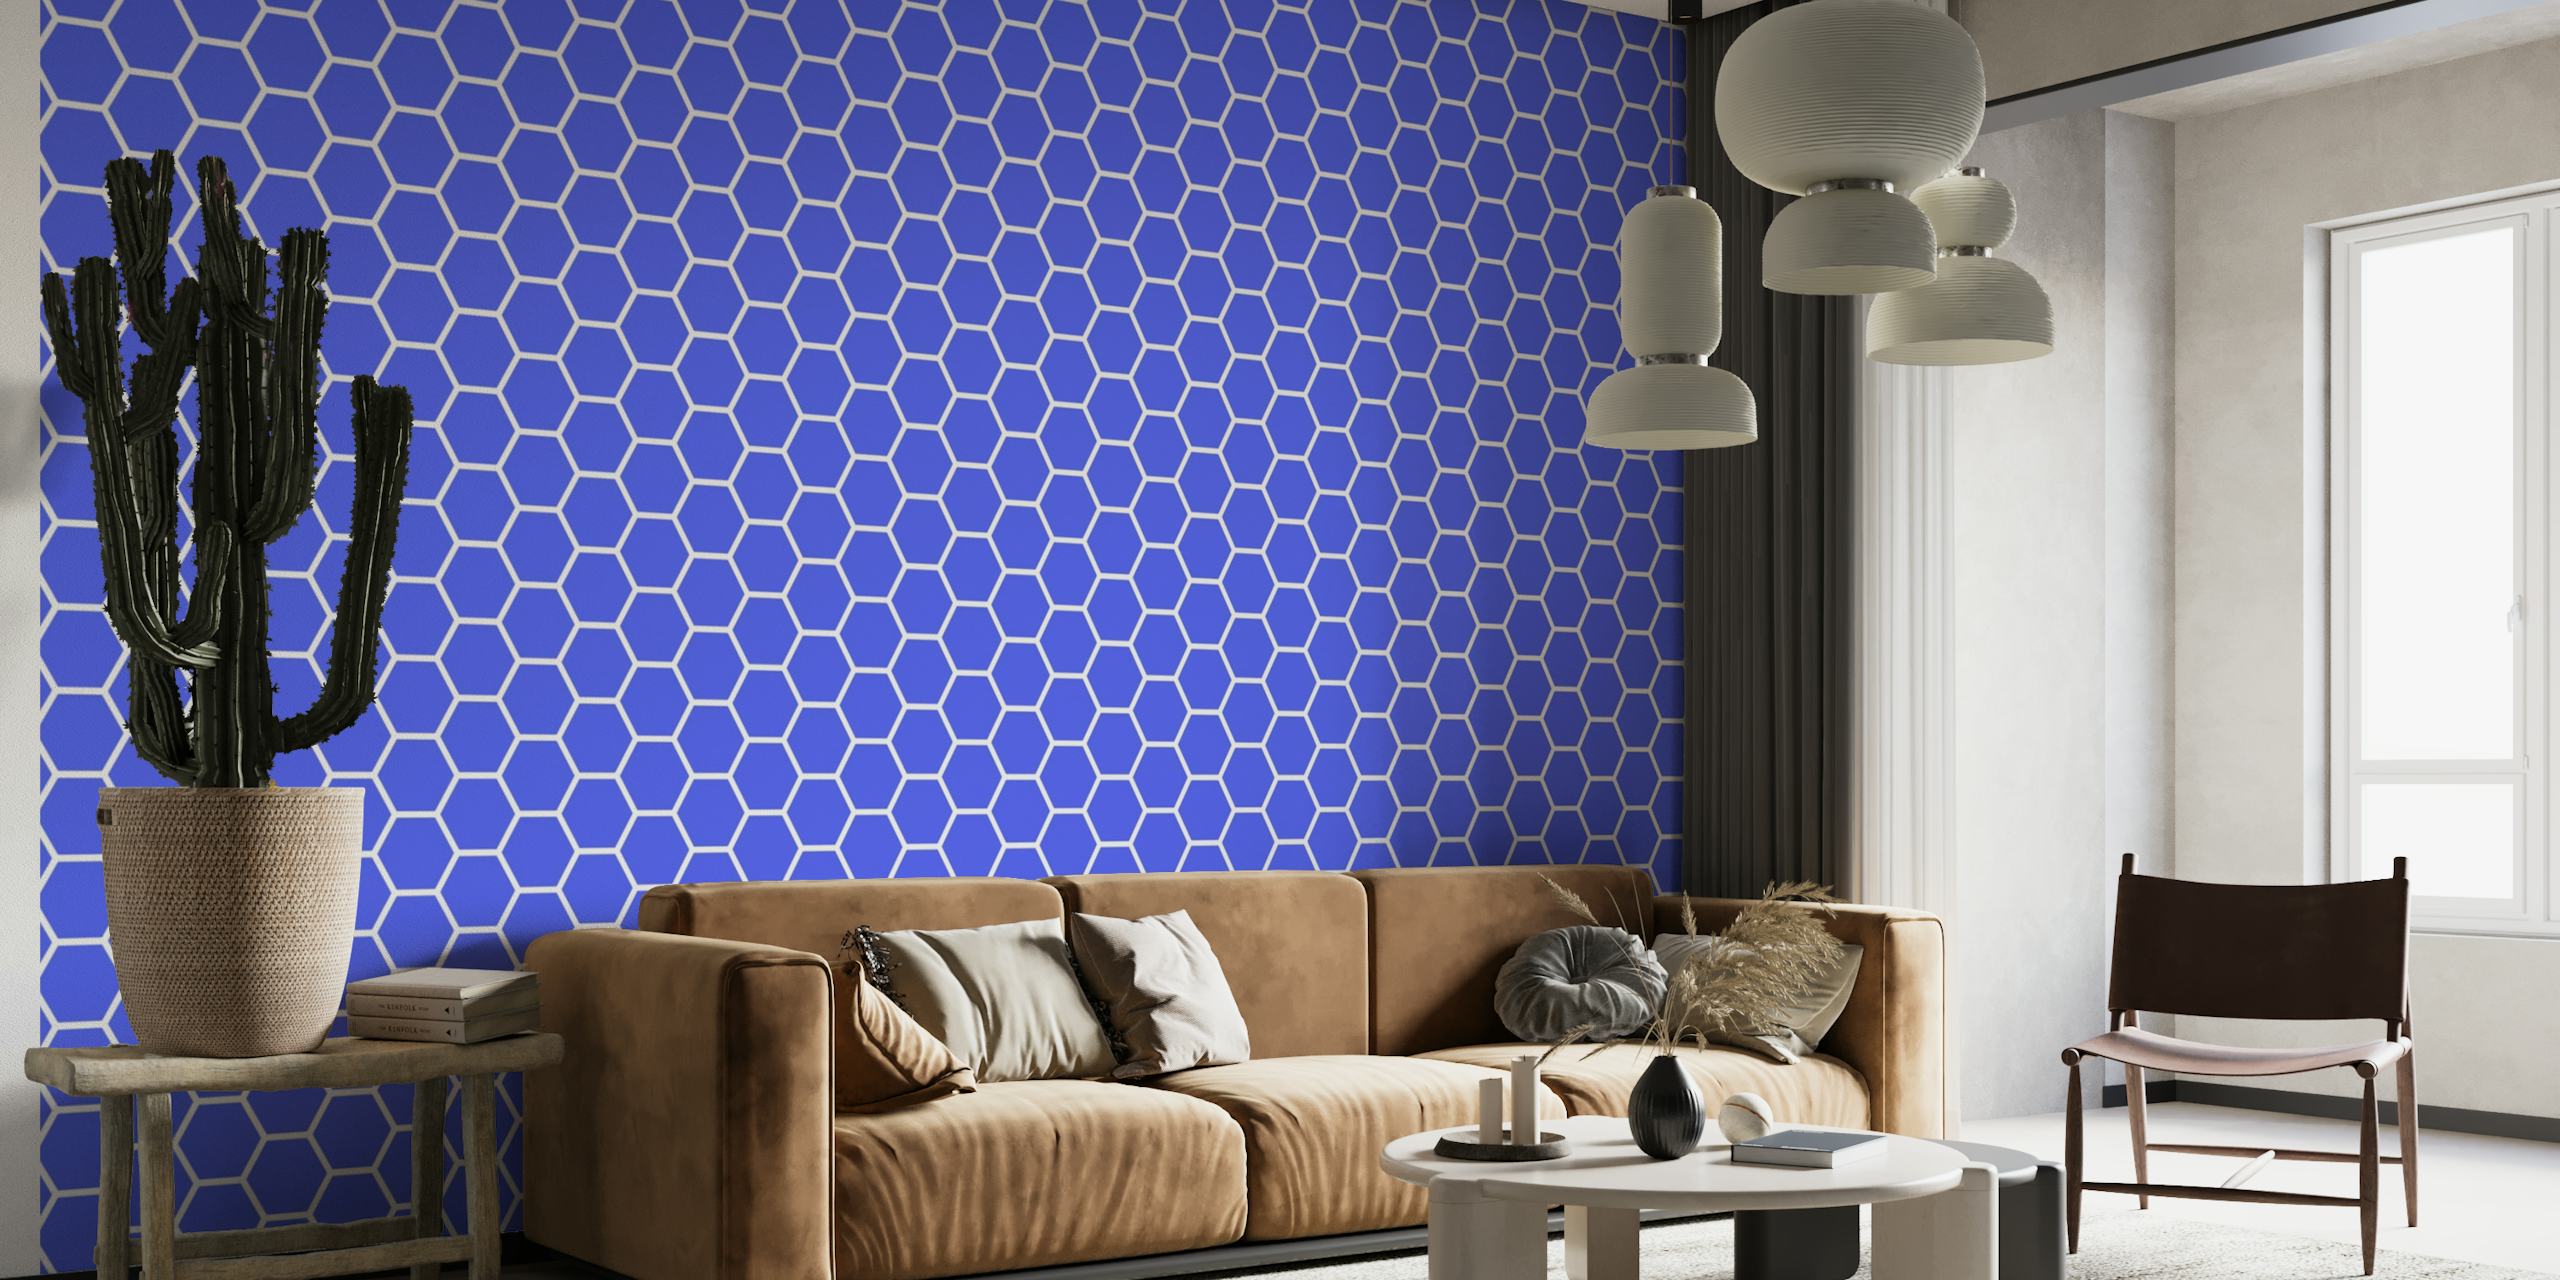 Fotomural vinílico de parede com padrão hexagonal azul brilhante para decoração de interiores contemporânea.